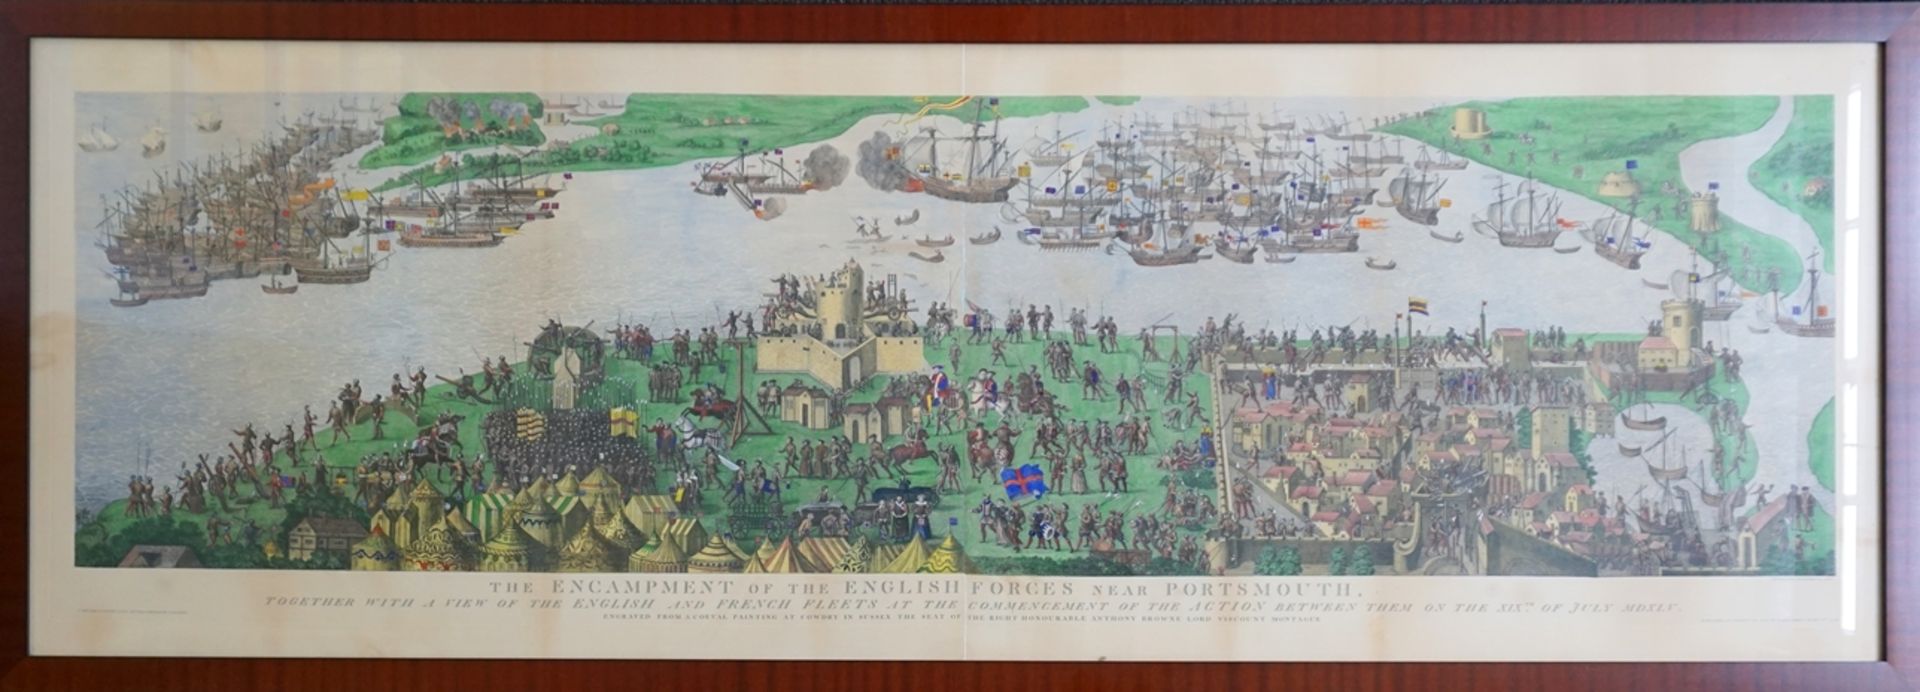 großformatige, handkolorierte Lithografie (?), "Seeschlacht im Solent von 1545 bei Portsmouth"